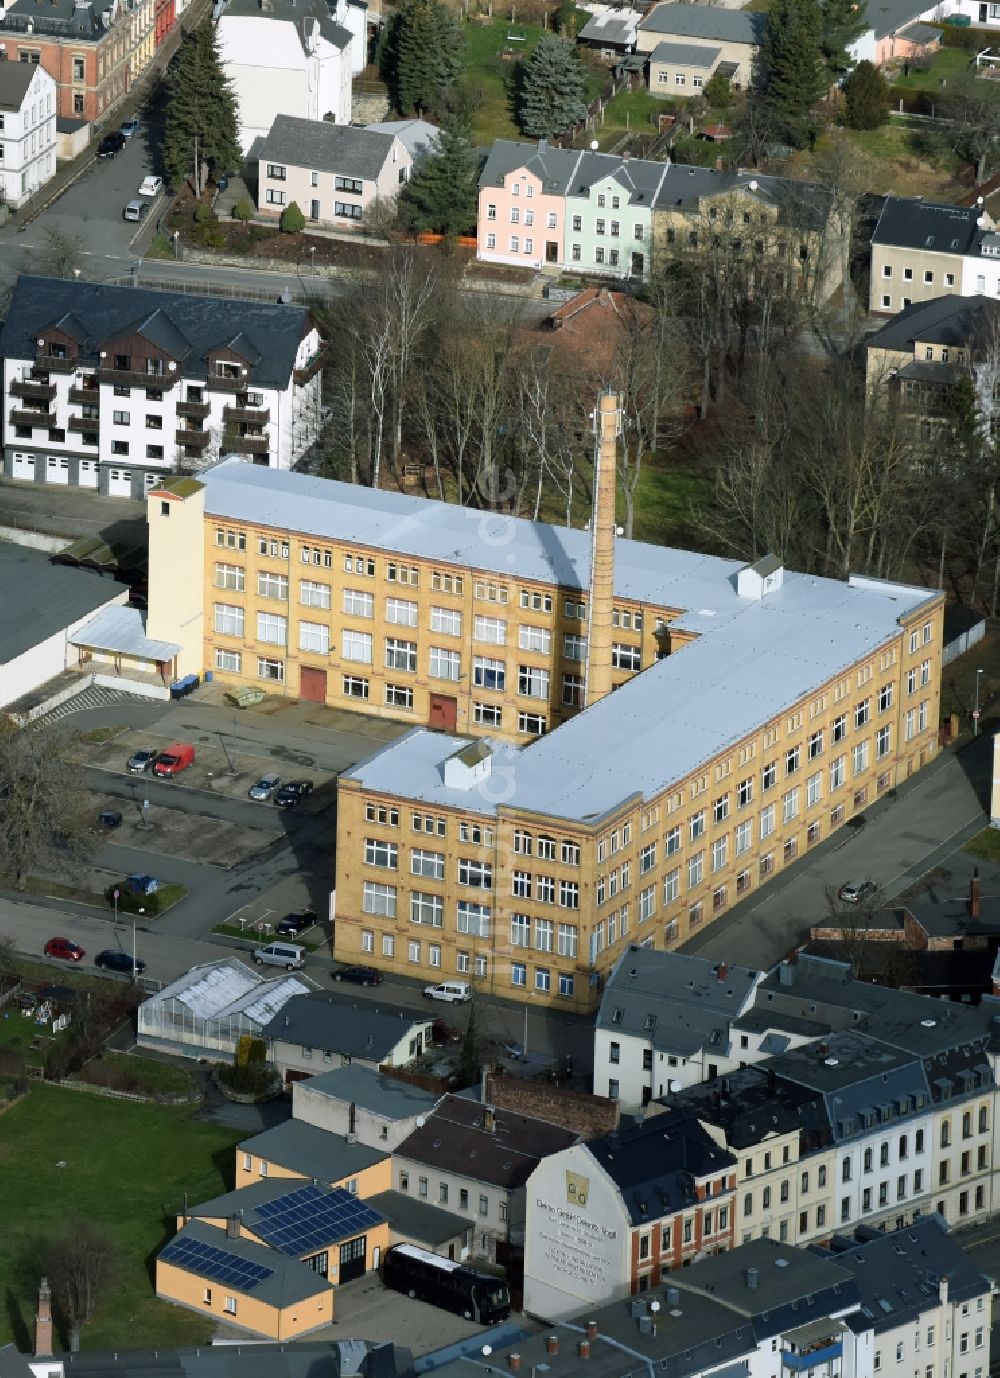 Luftaufnahme Oelsnitz/Vogtl. - Werksgelände der alten Fabrik an der Schillerstraße in Oelsnitz/Vogtl. im Bundesland Sachsen